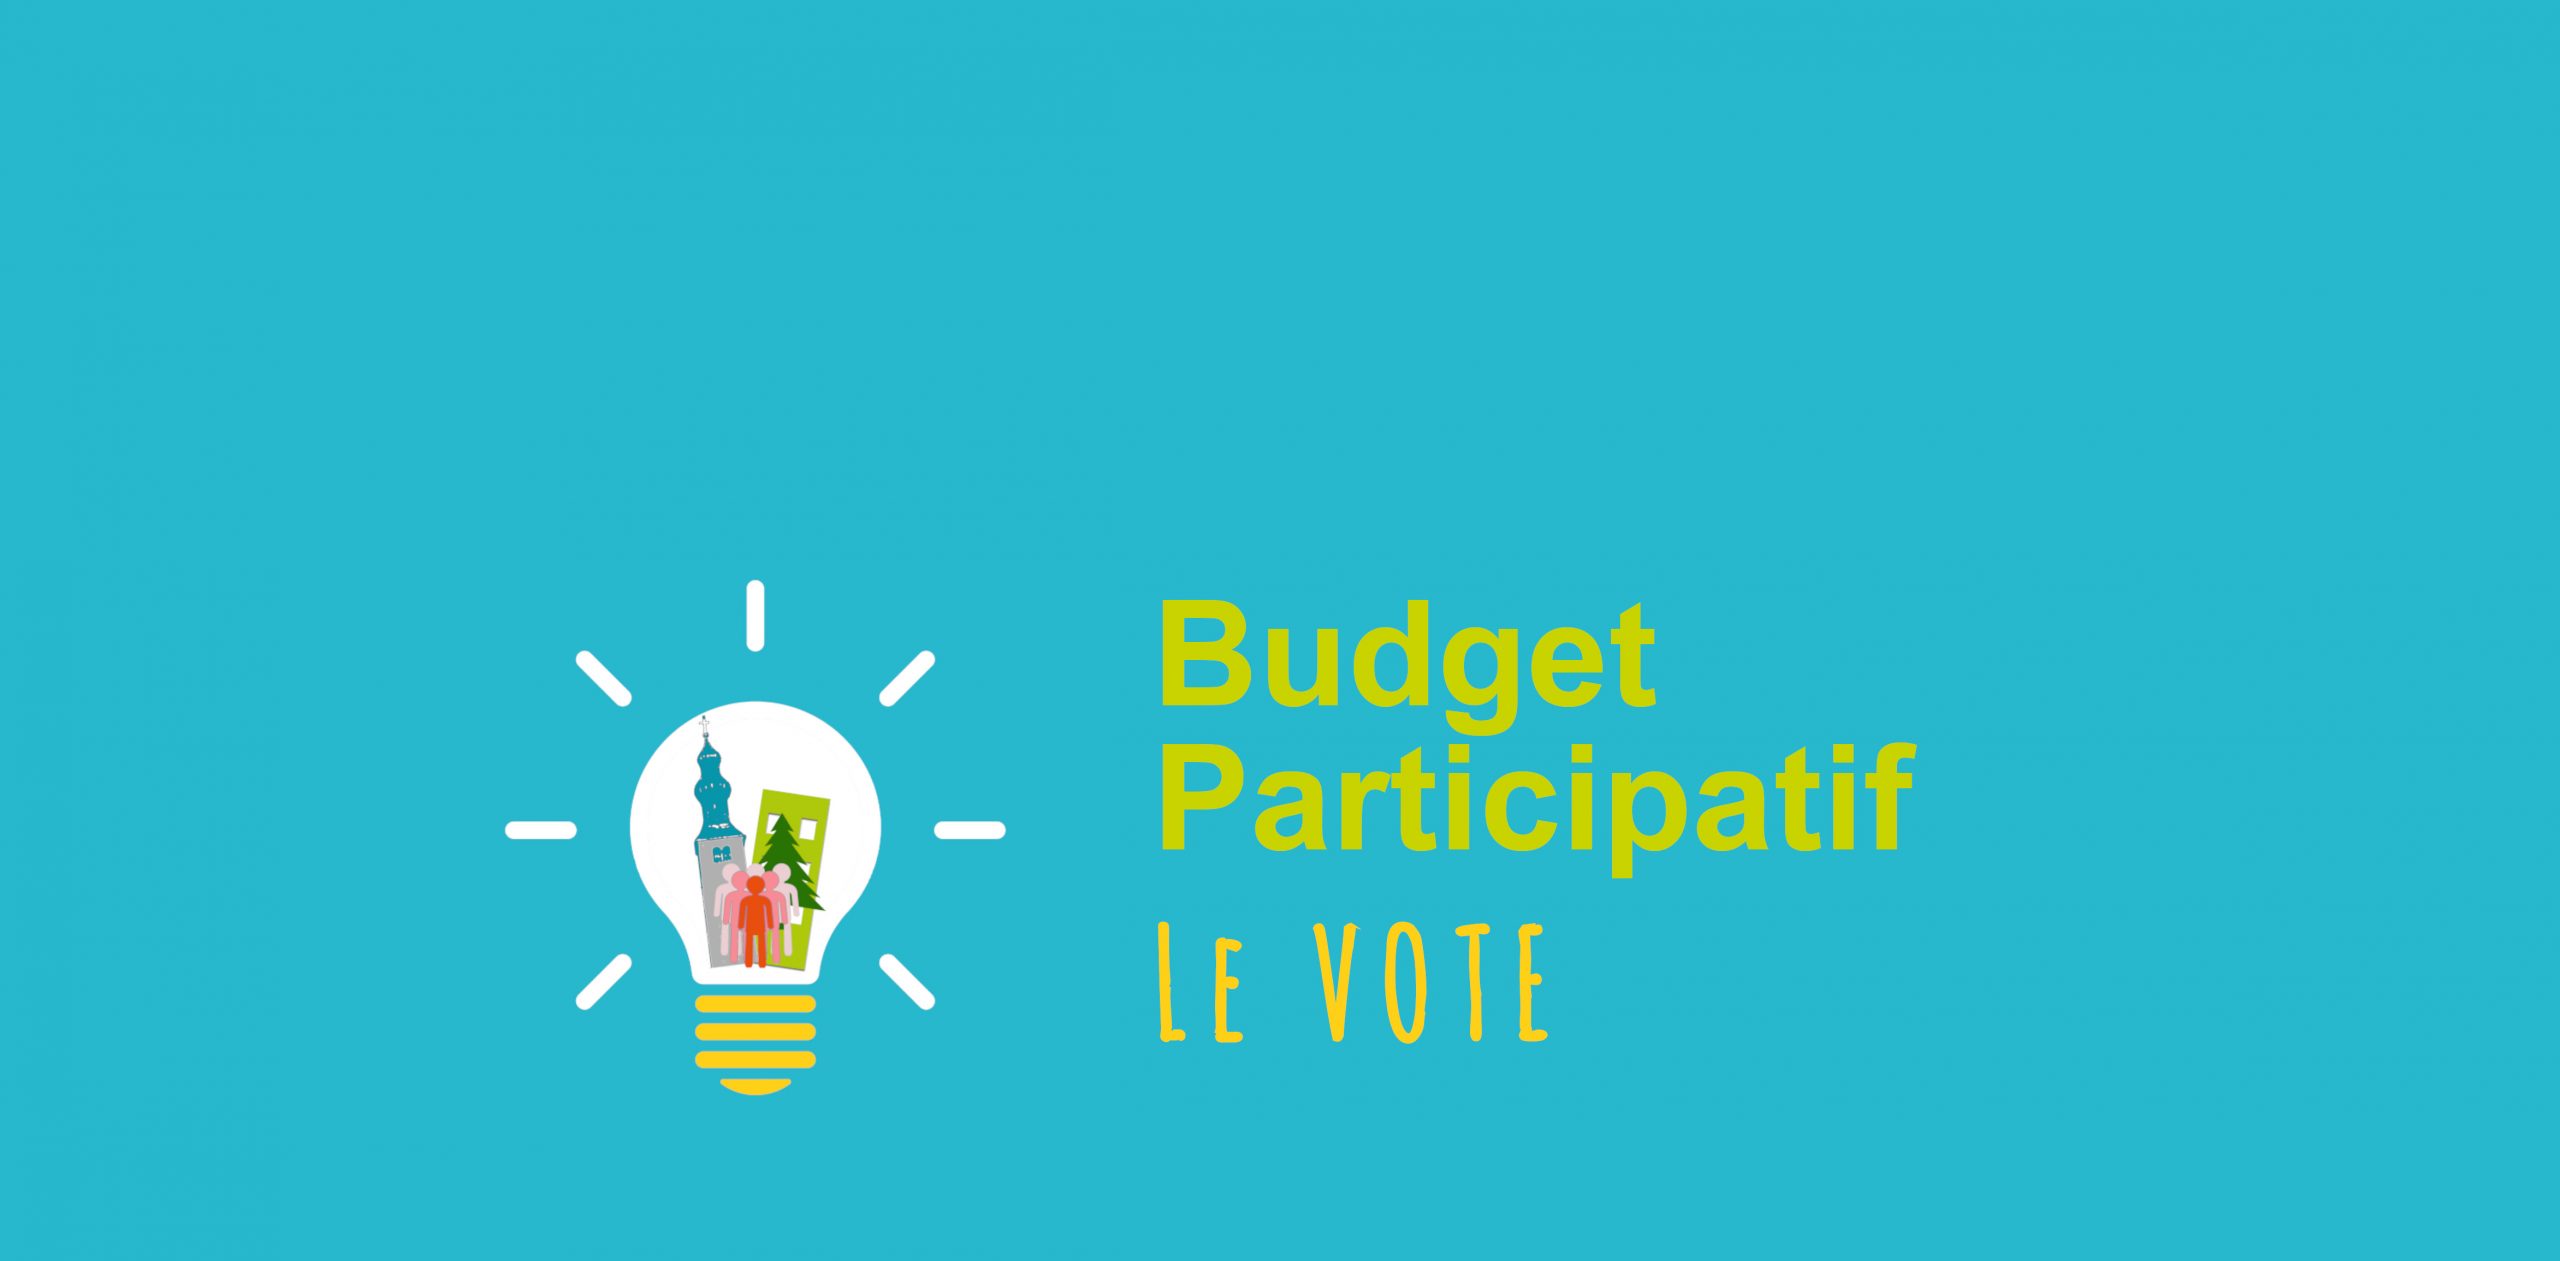 Budget participatif : le VOTE